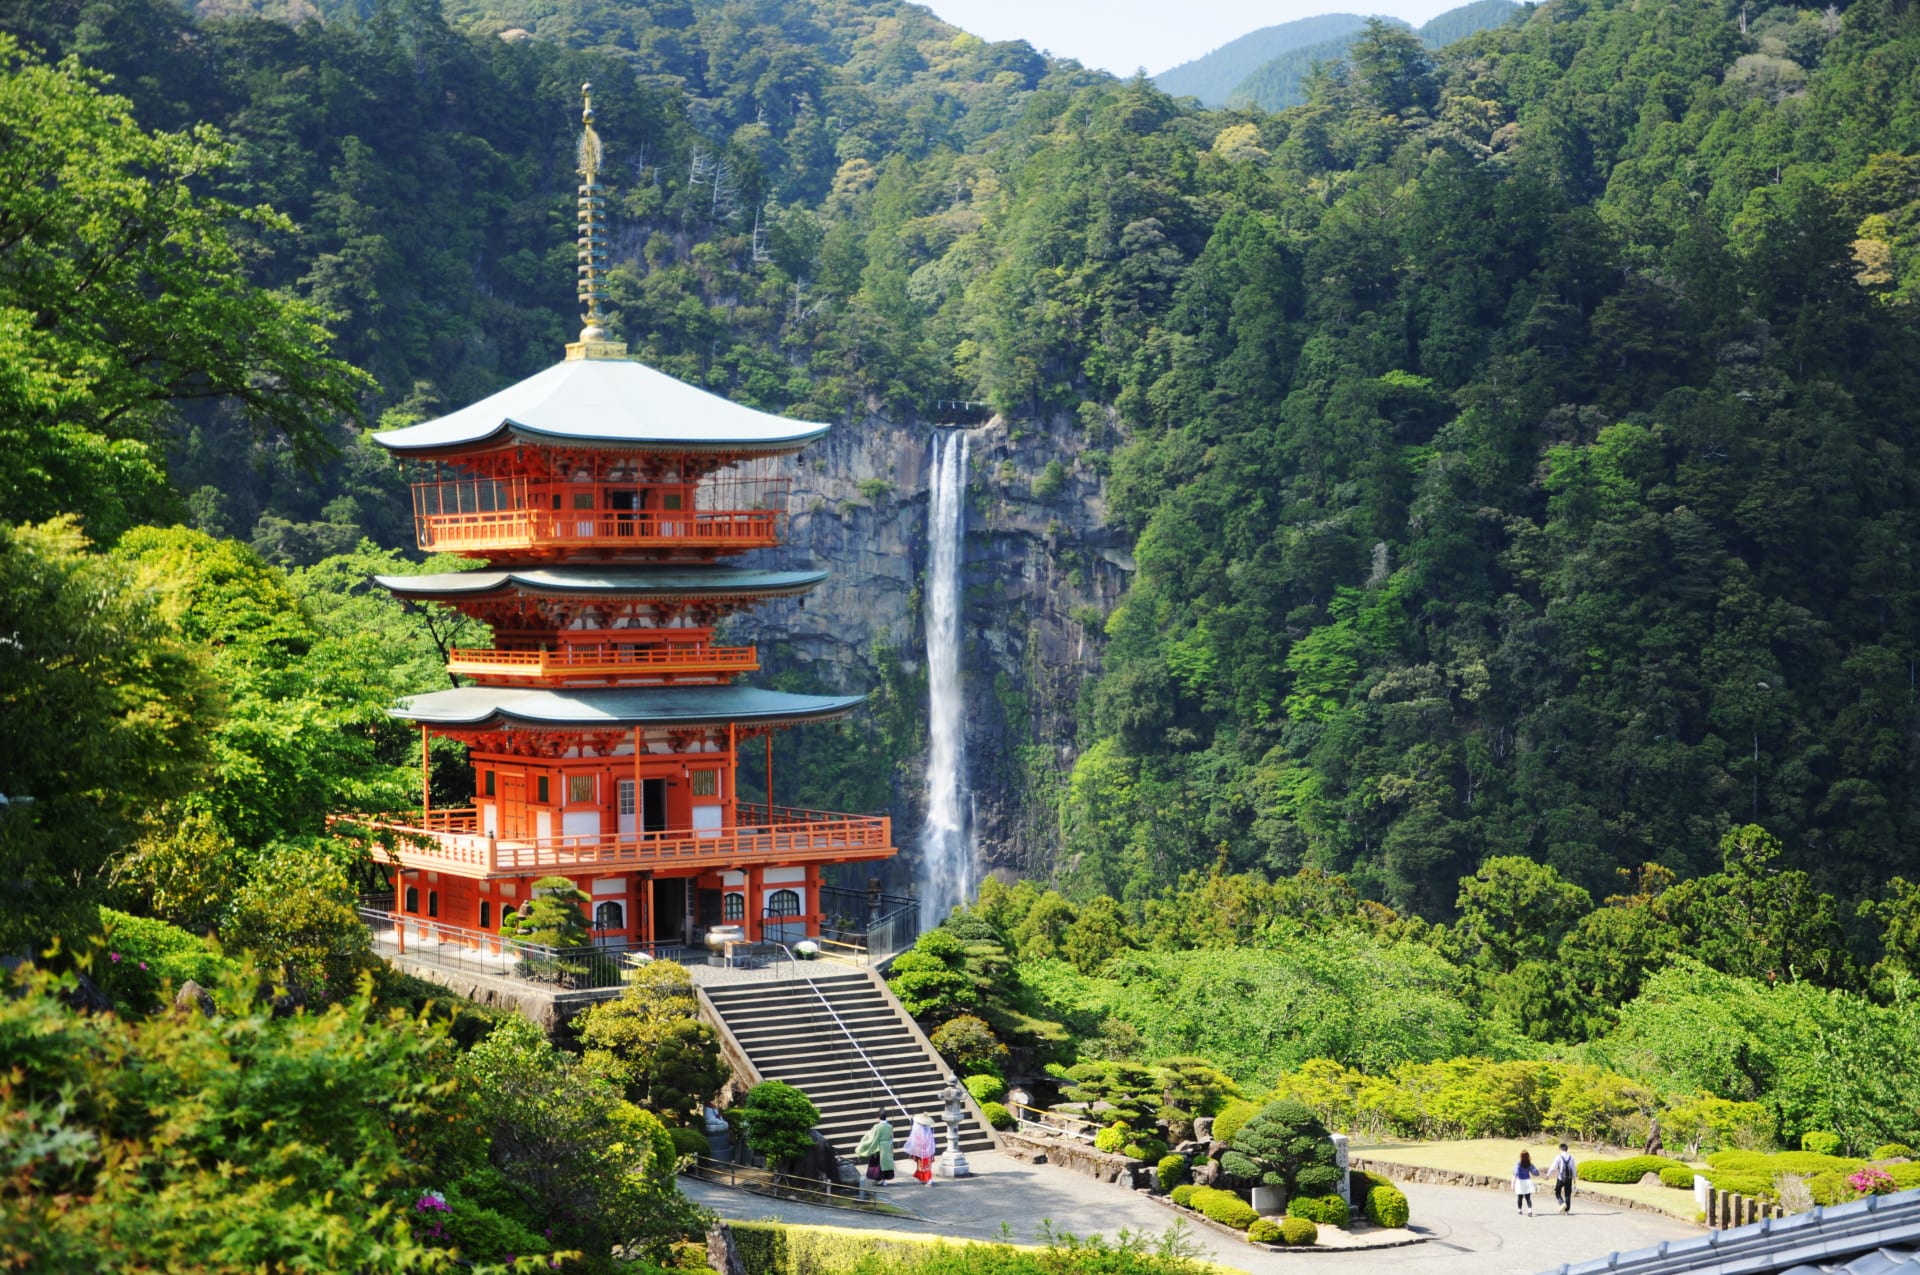 فتحت اليابان أبوابها للمسافرين.. ولكن ما سبب عدم عودة السياح حتّى الآن؟